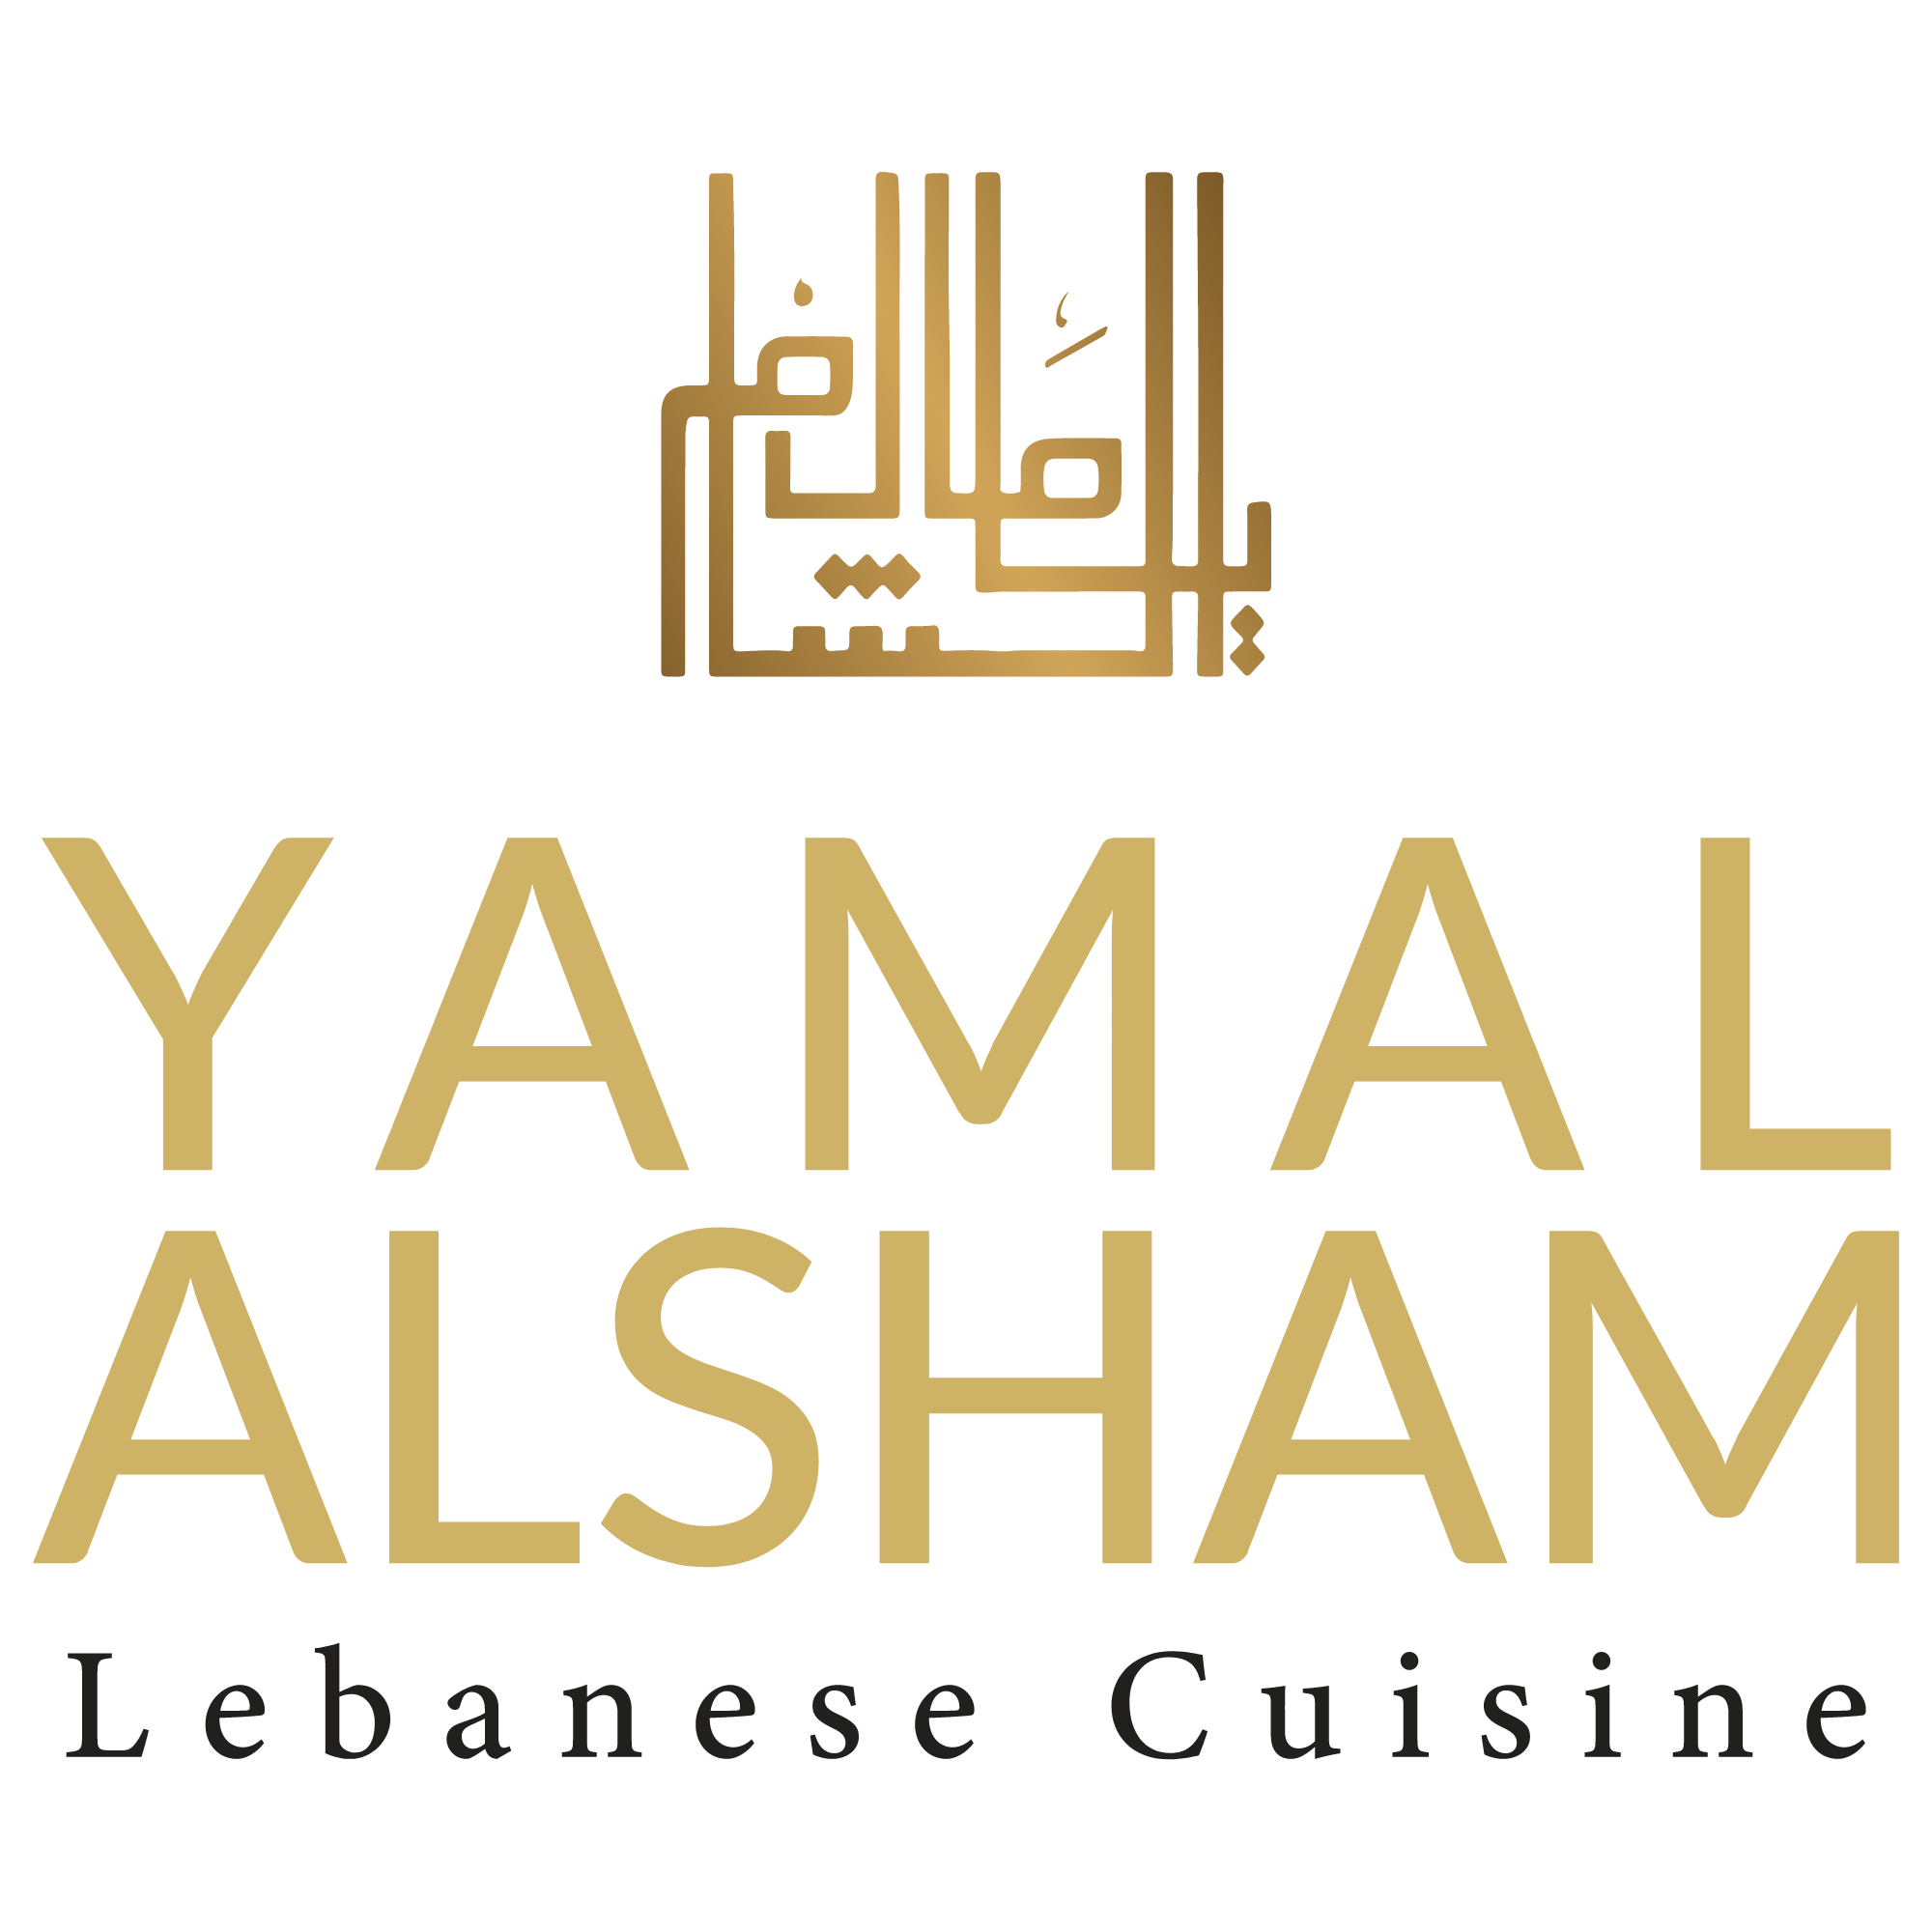 Yamal Alsham